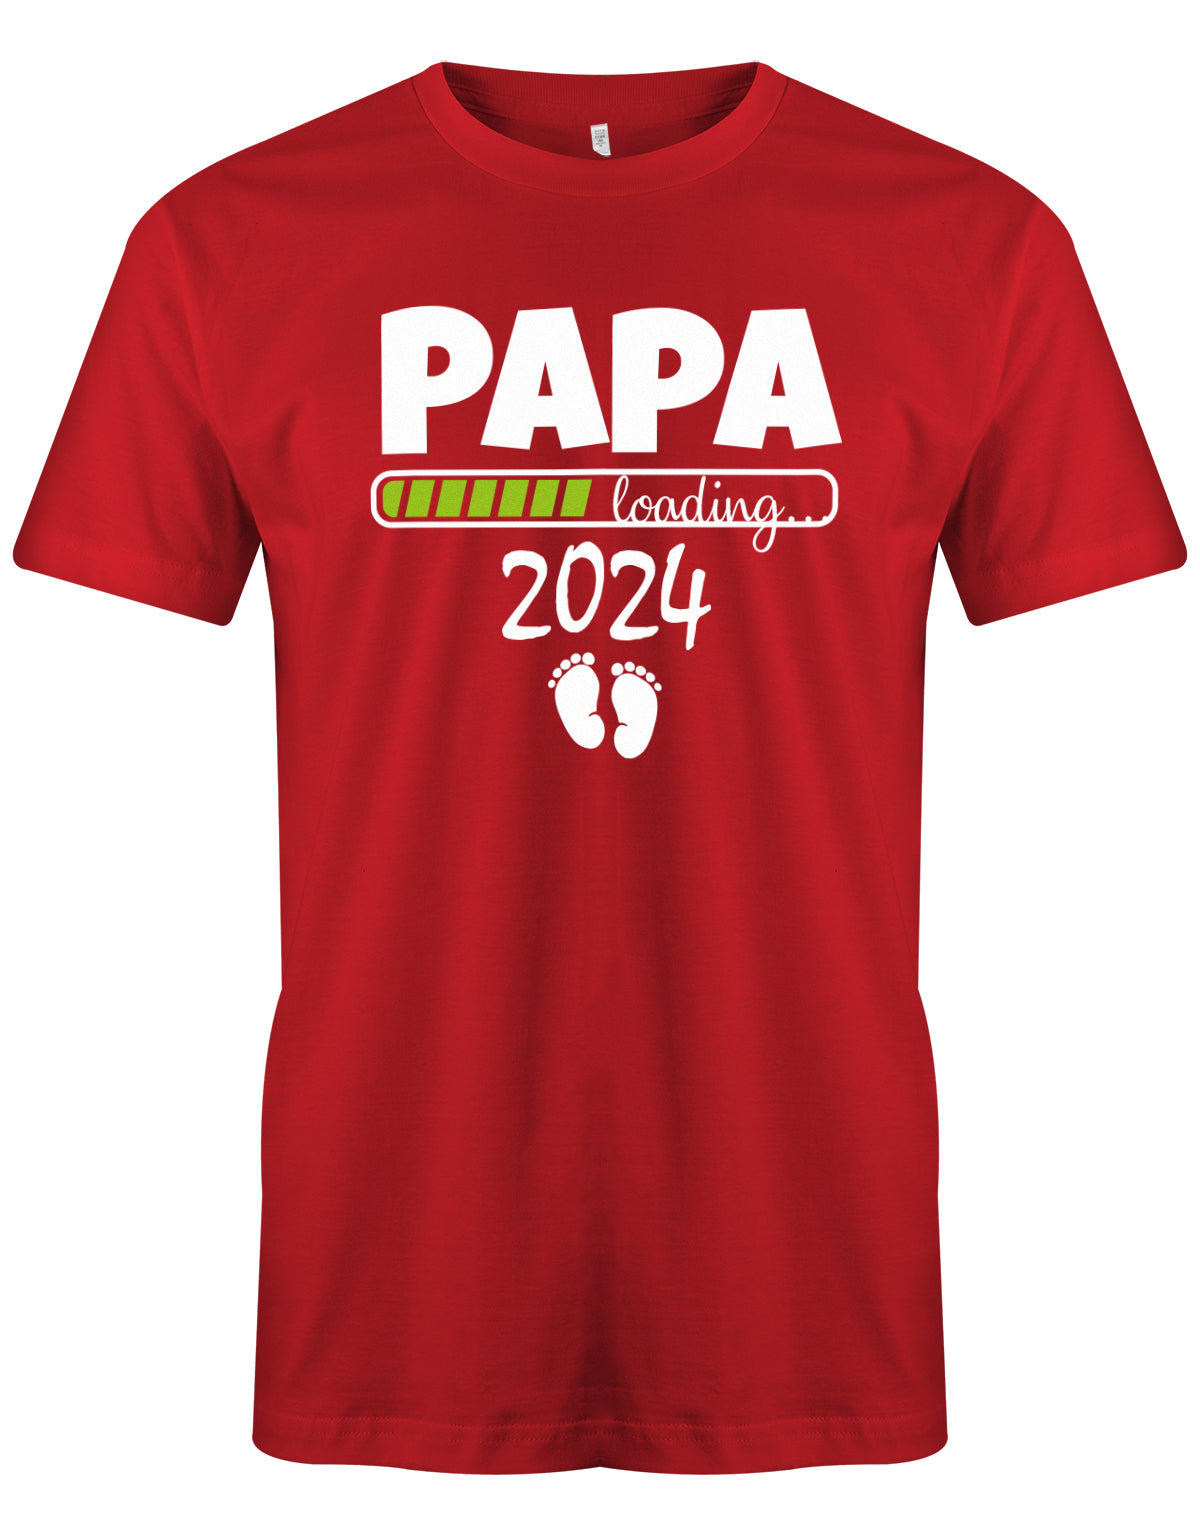 Papa Loading 2024 - Werdender Papa Shirt Herren Rot